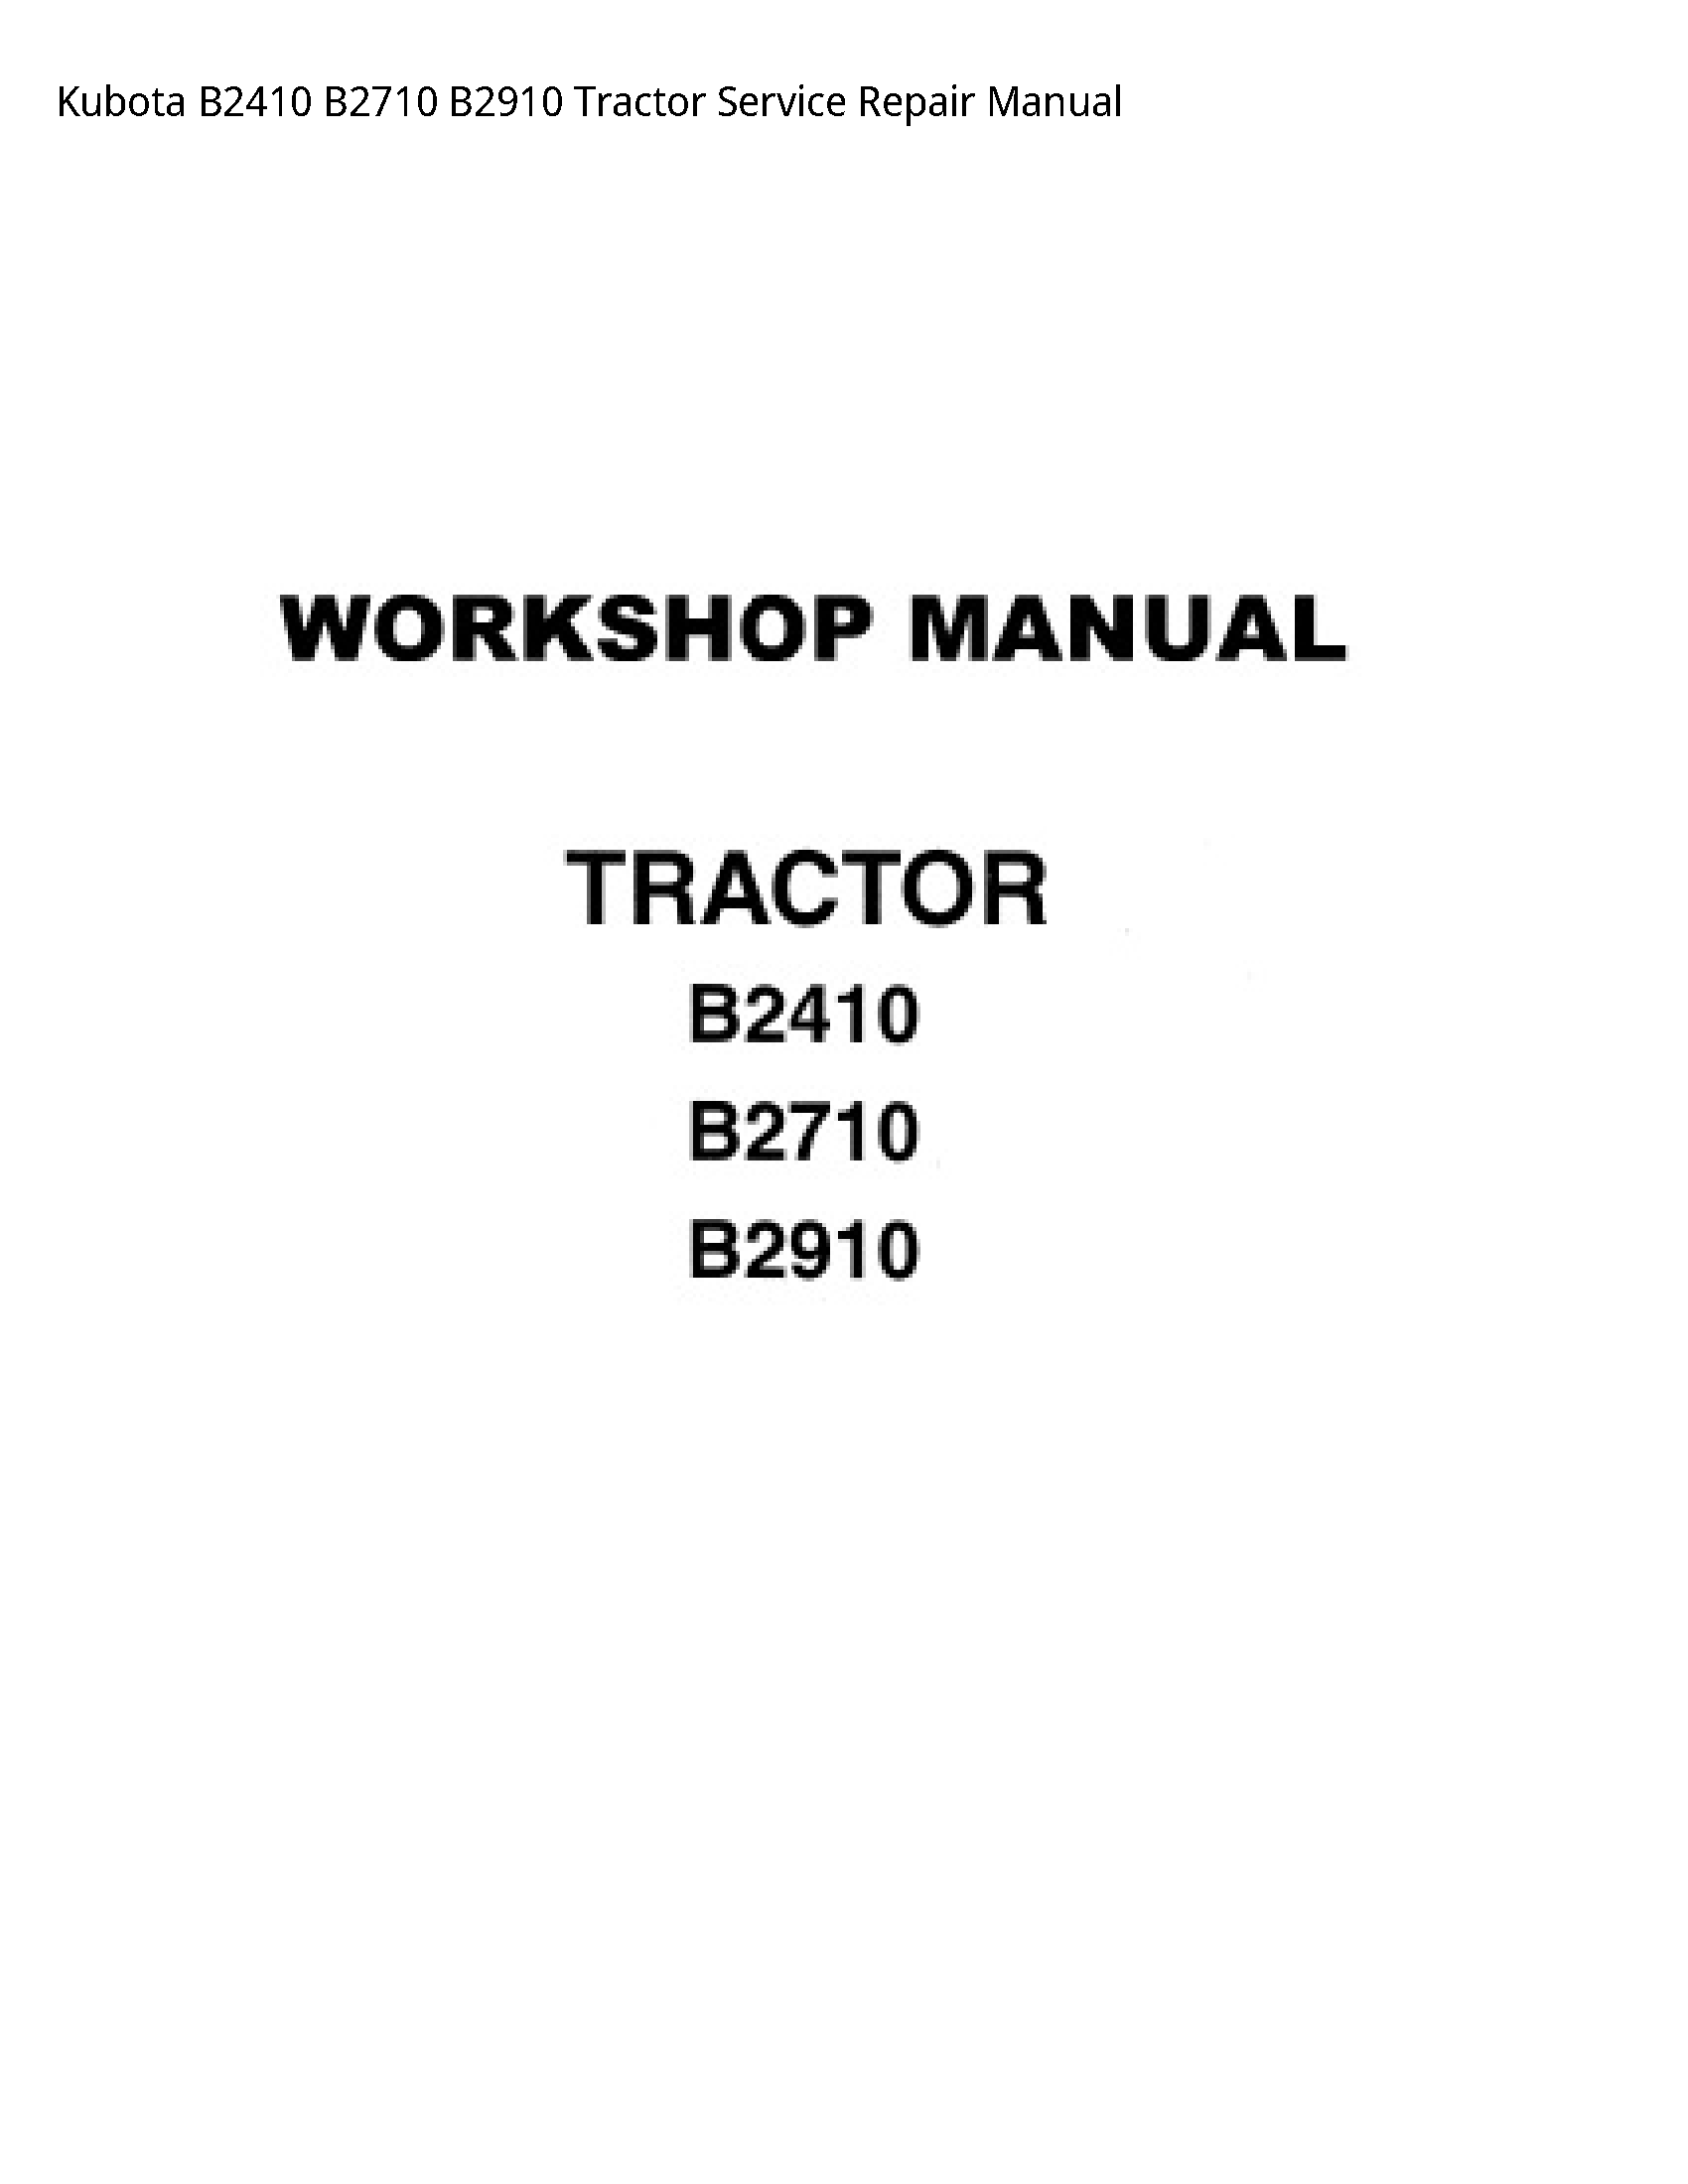 Kubota B2410 B2710 B2910 Tractor Service Repair Manual